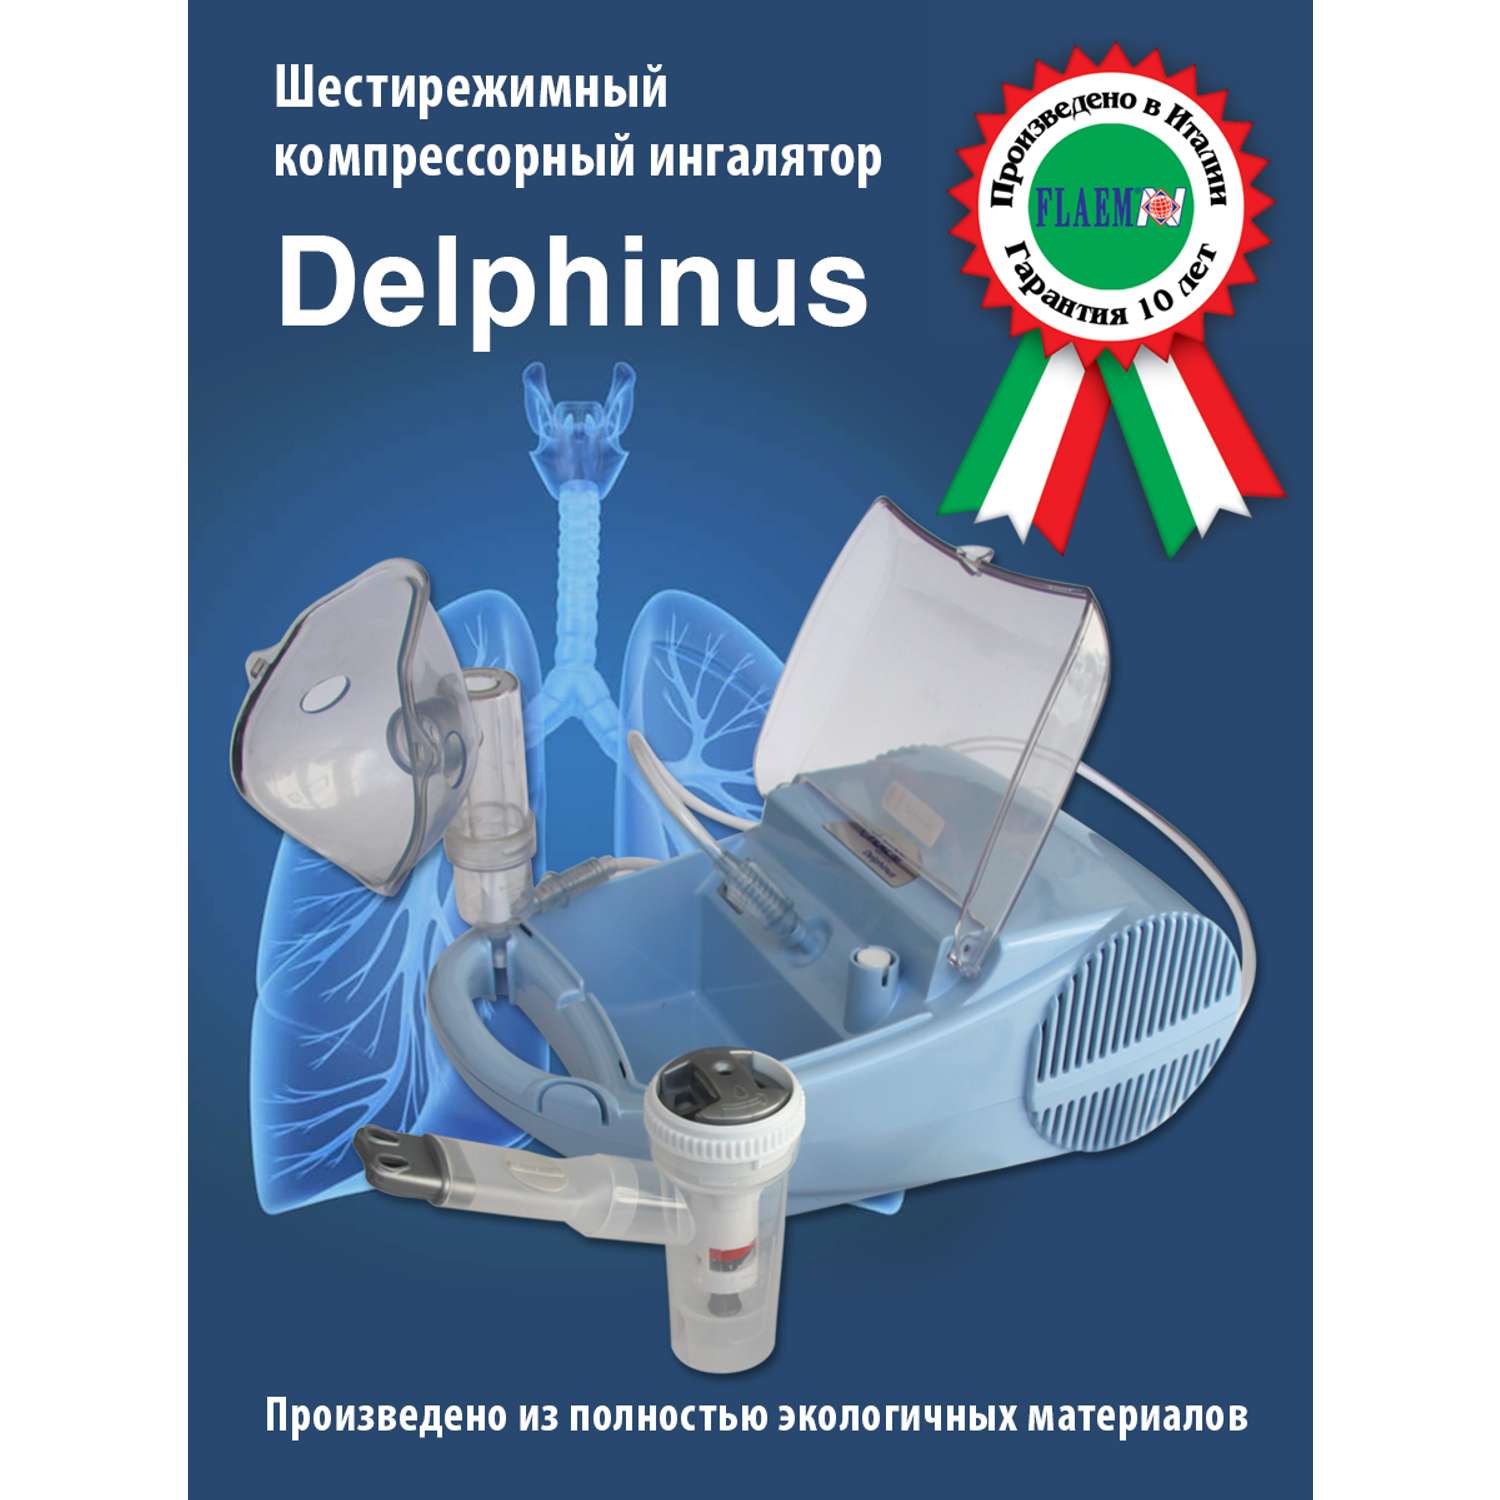 Ингалятор FLAEM NUOVA Компрессорный шестирежимный Дельфин Италия - фото 1